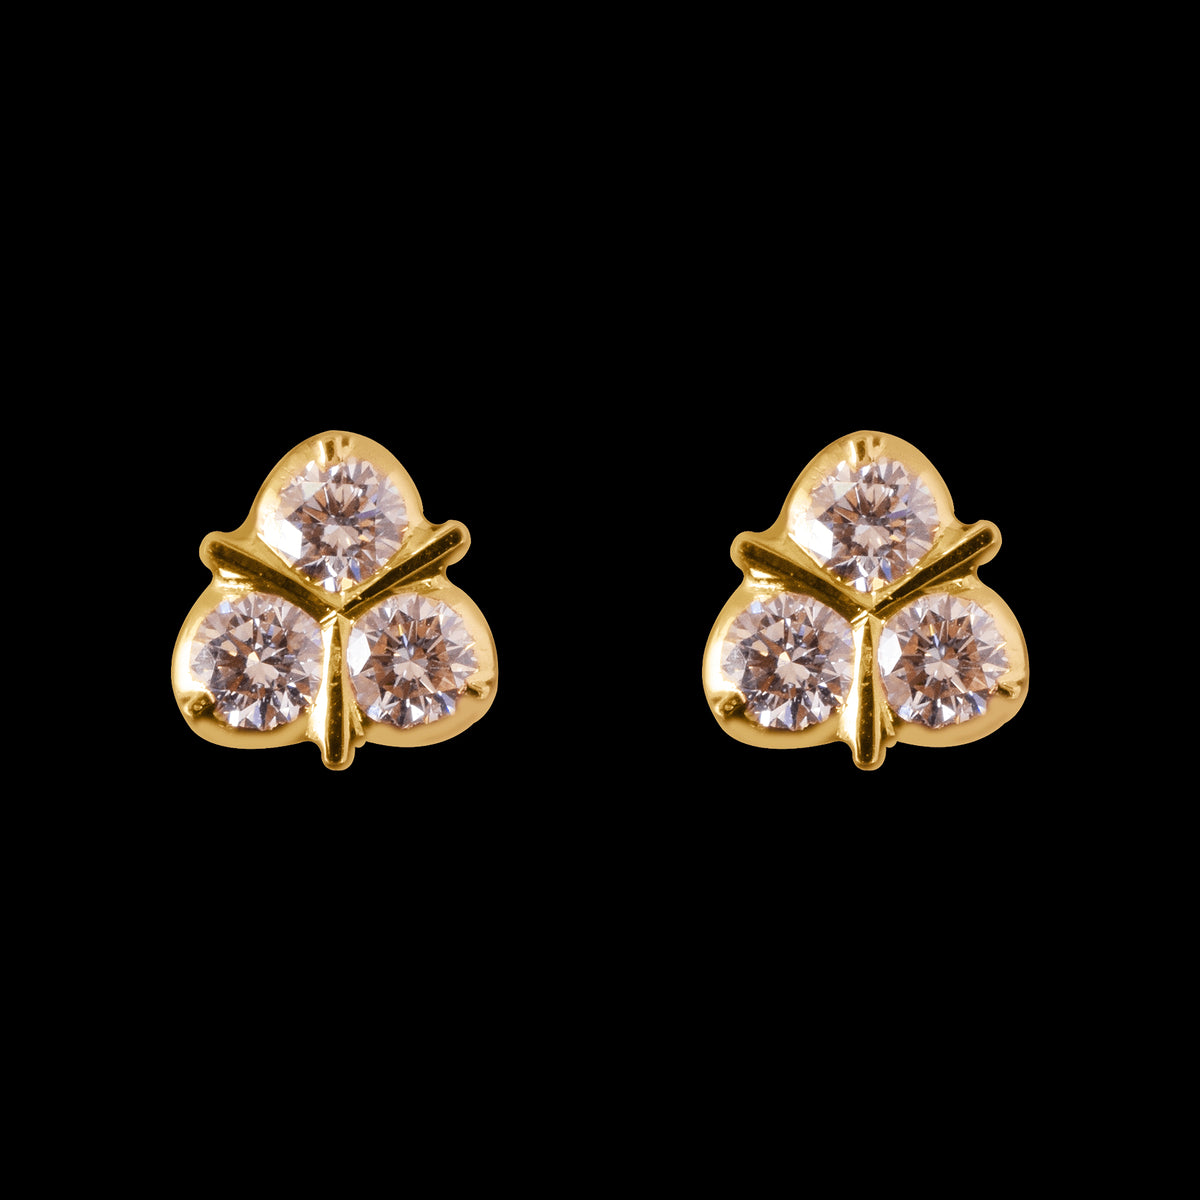 Share 169+ five stone diamond earrings best